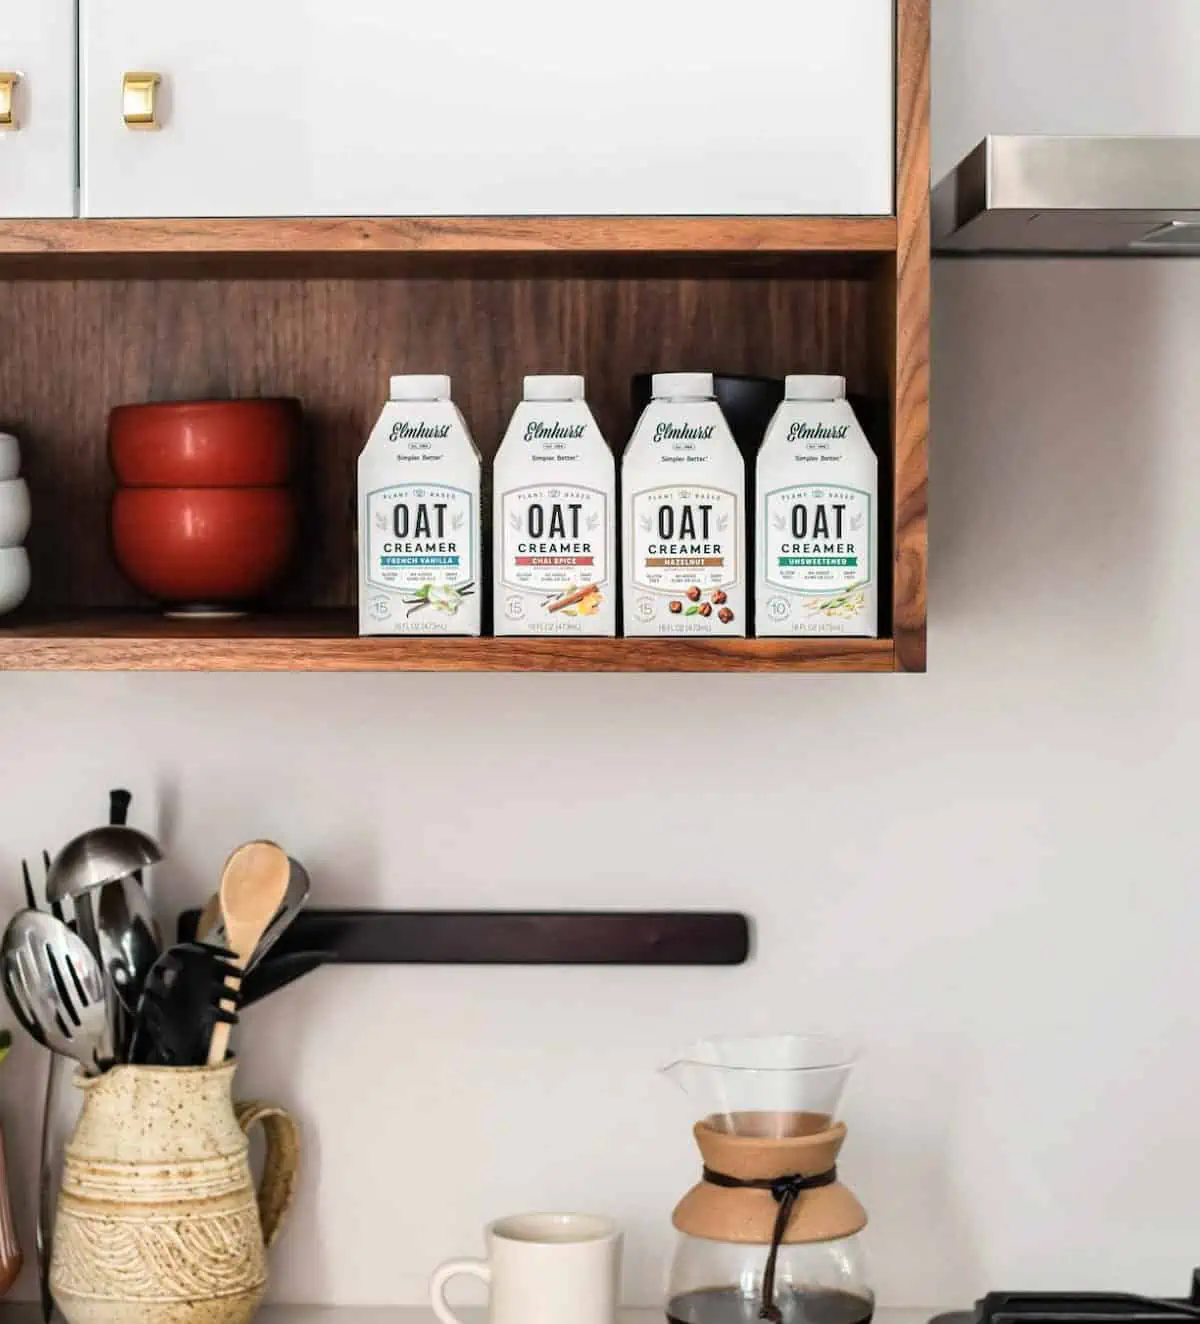 Elmhurst oat coffee creamers in a row on a shelf.